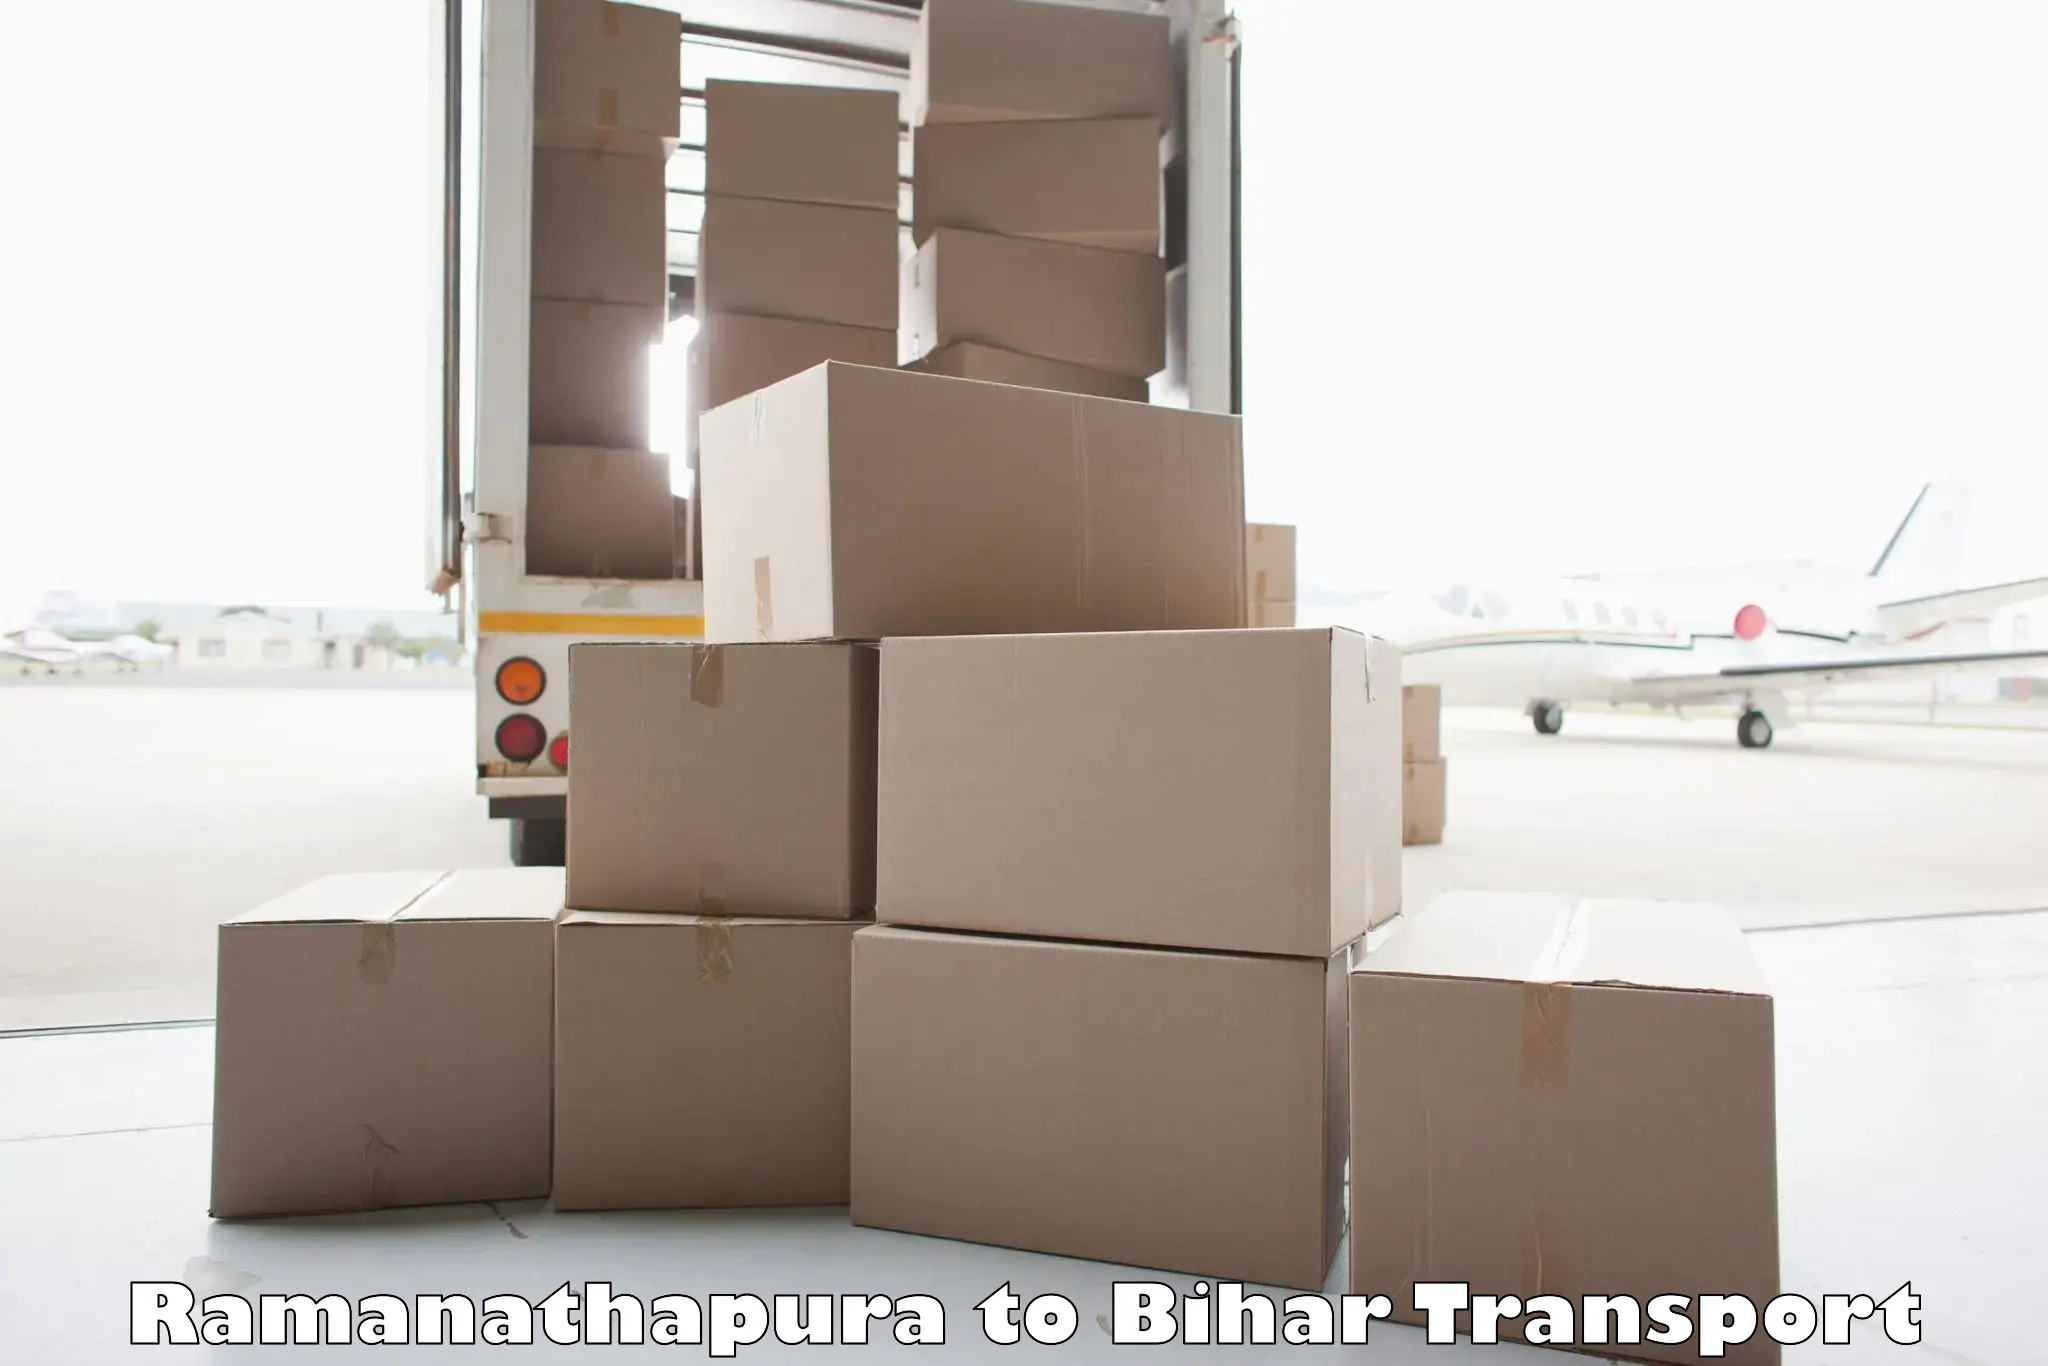 All India transport service Ramanathapura to Arrah